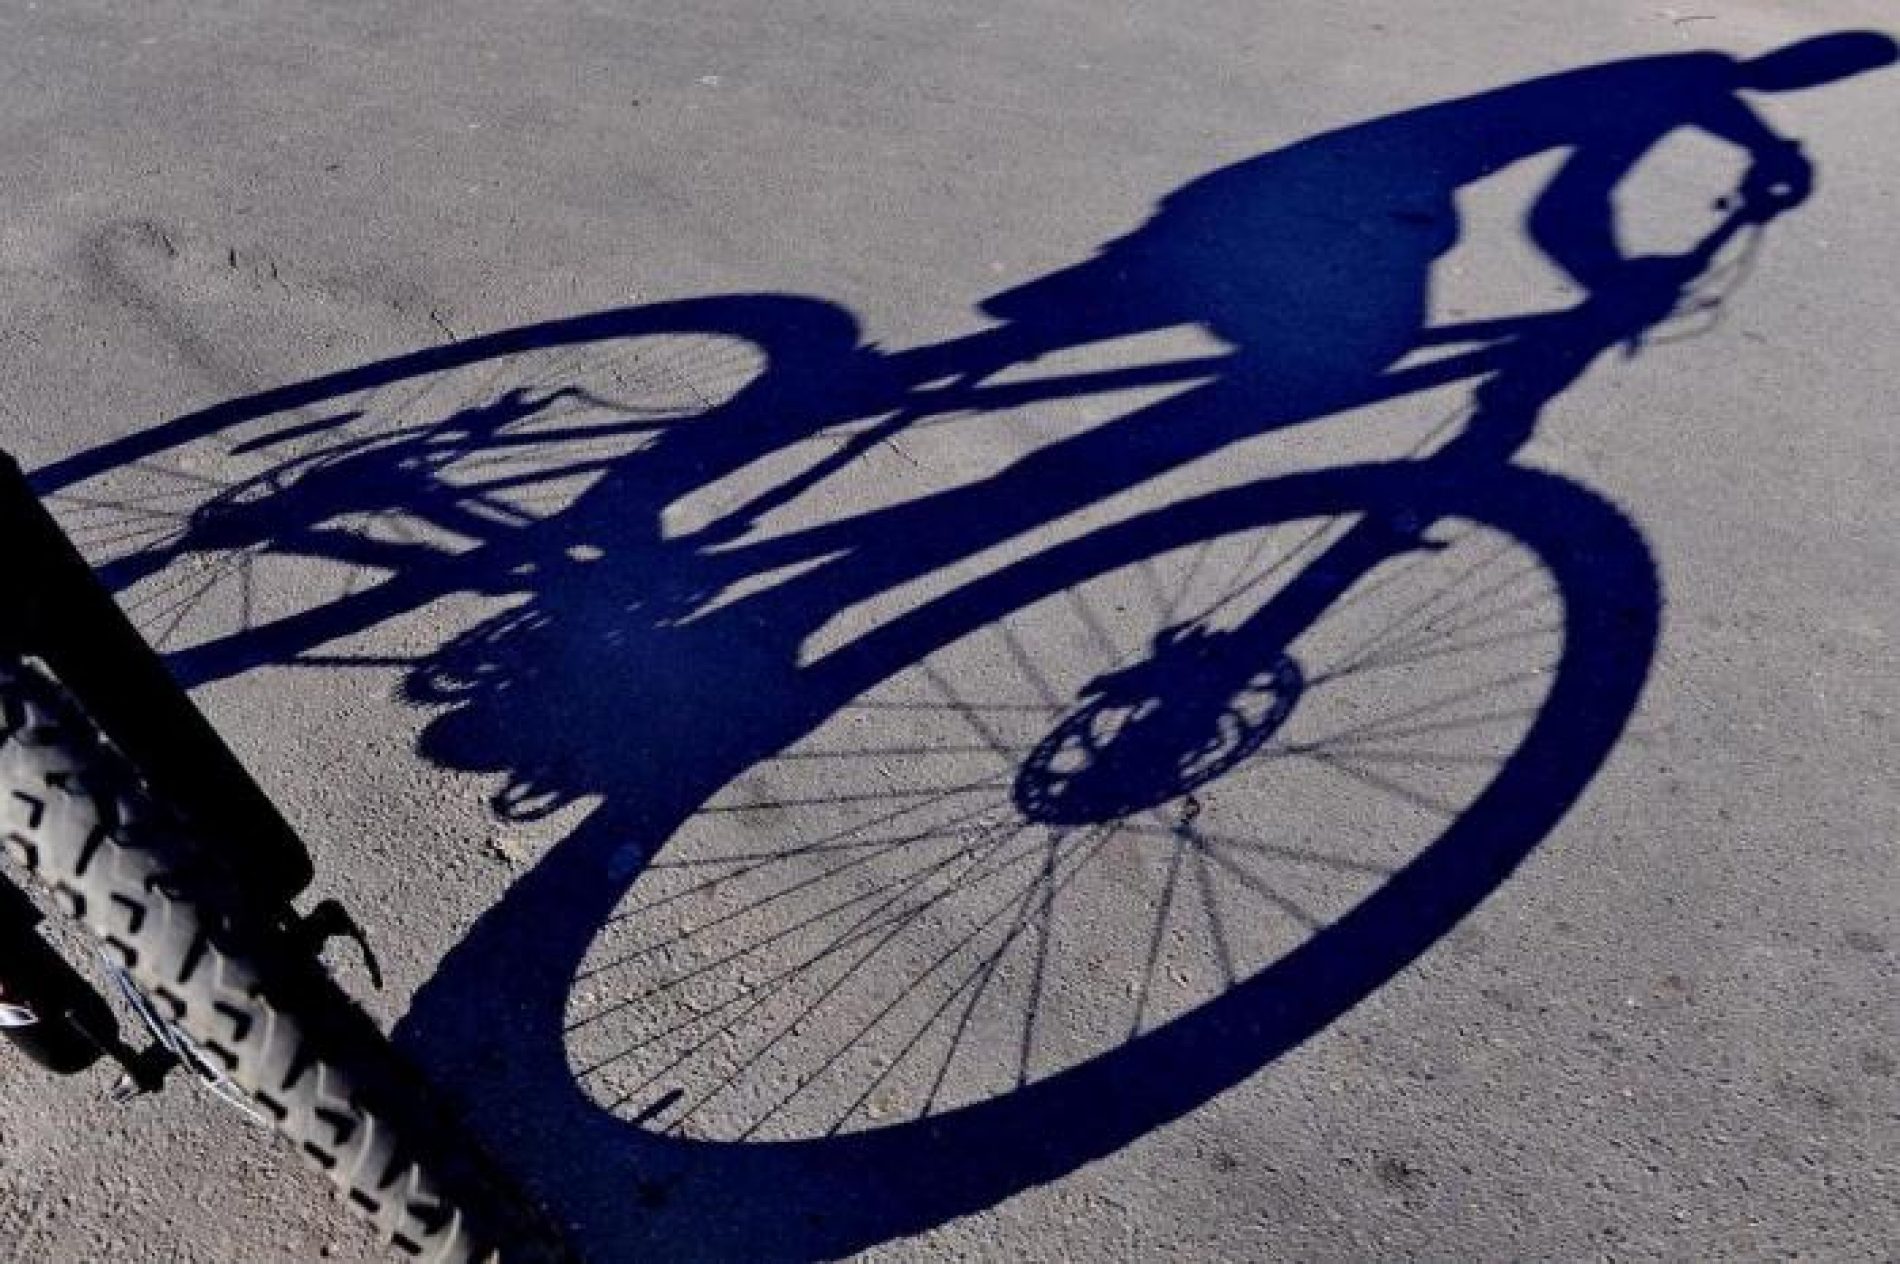 BARRETOS: Desentendimento por causa de bicicleta furtada